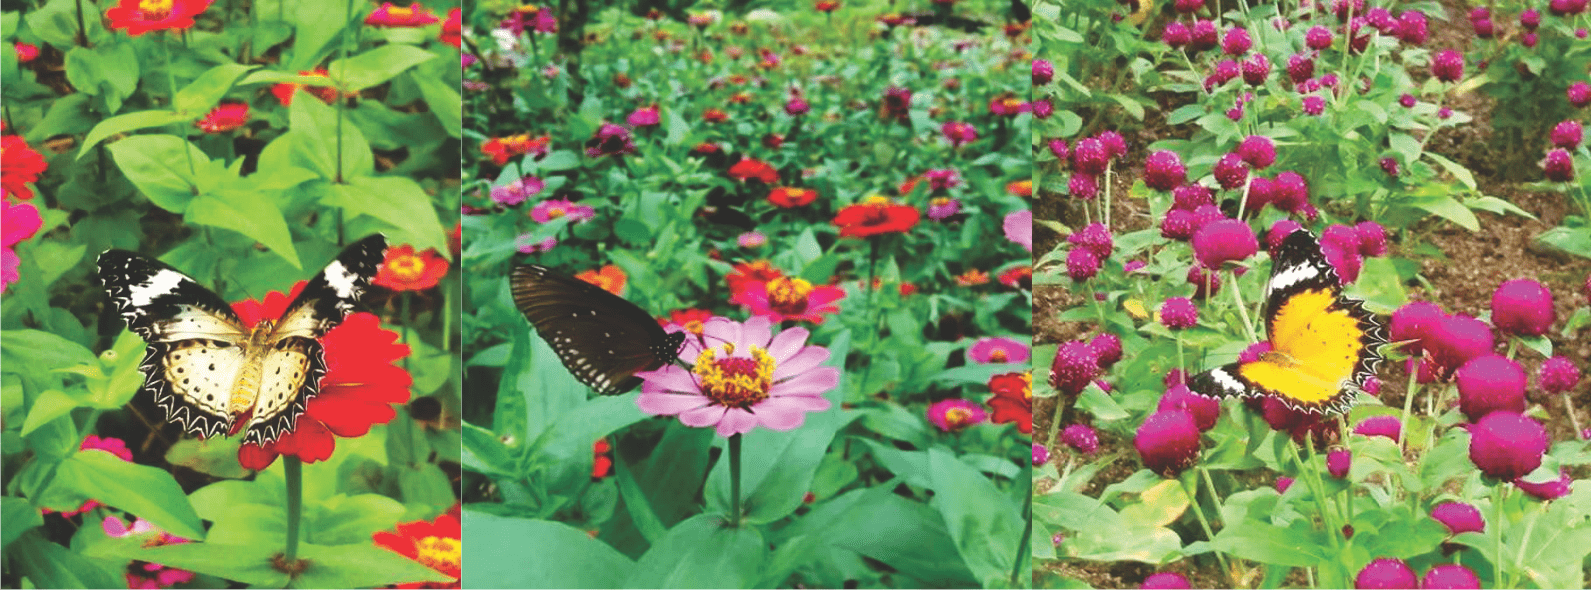 vườn hoa và các loài bướm ở Nha Trang ( ảnh sưu tầm)